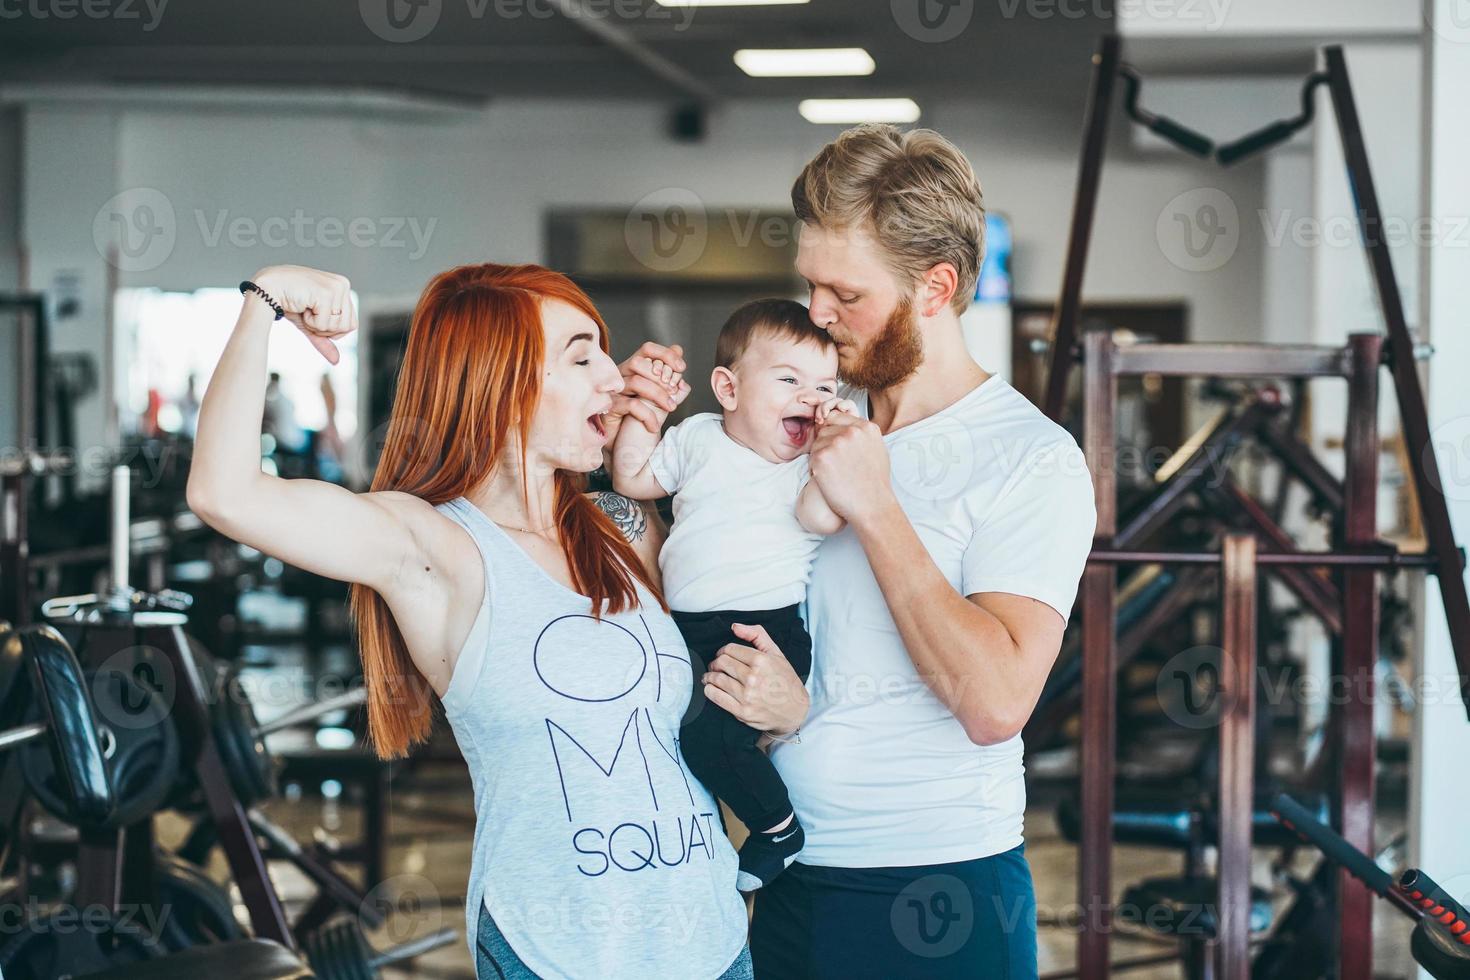 junge familie mit kleinem jungen im fitnessstudio foto